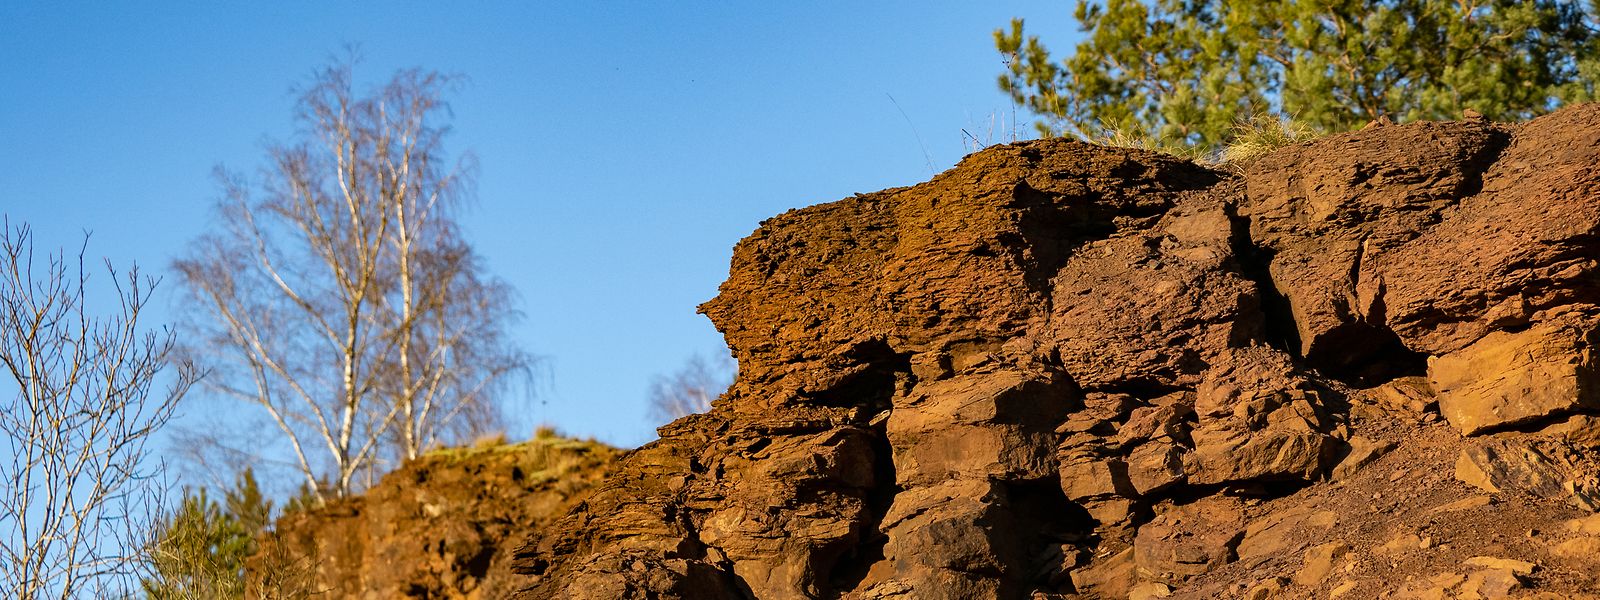 Grand Canyon im Kleinformat: Die roten Felsen sind das Wahrzeichen der ehemaligen Industrieregion im Süden Luxemburgs.